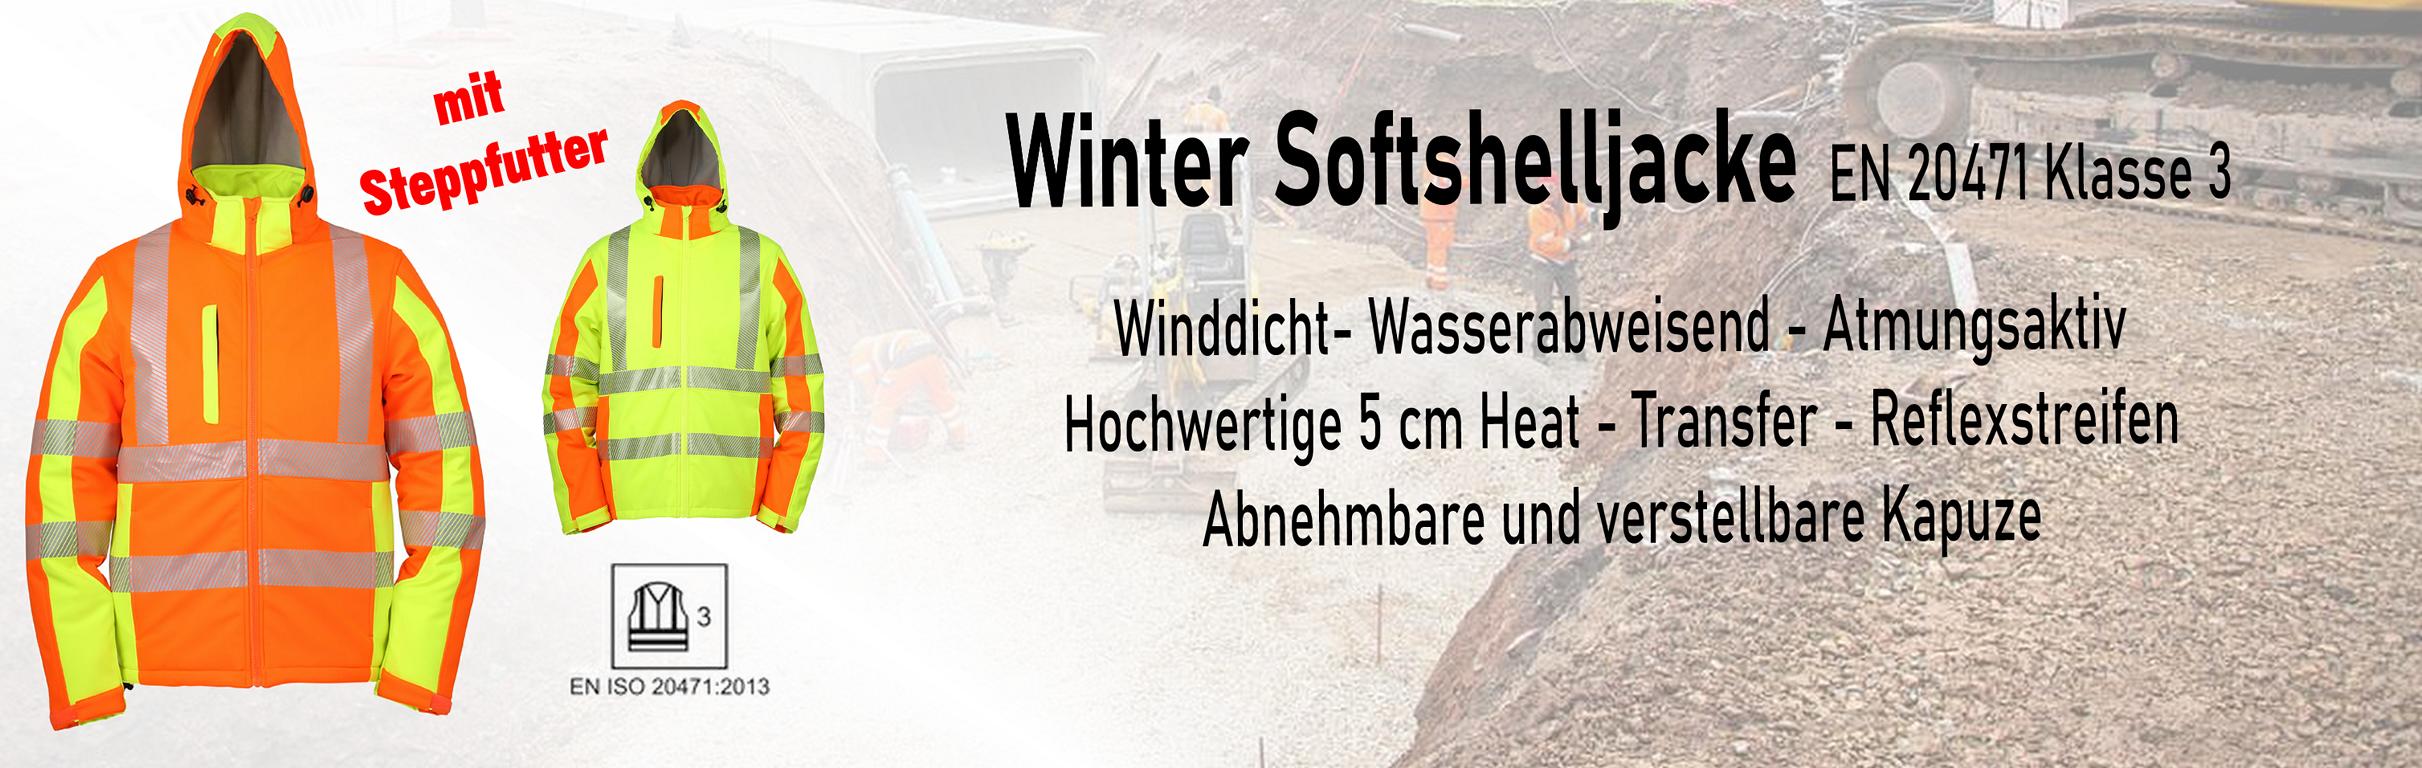 Winter-Softshelljacke 